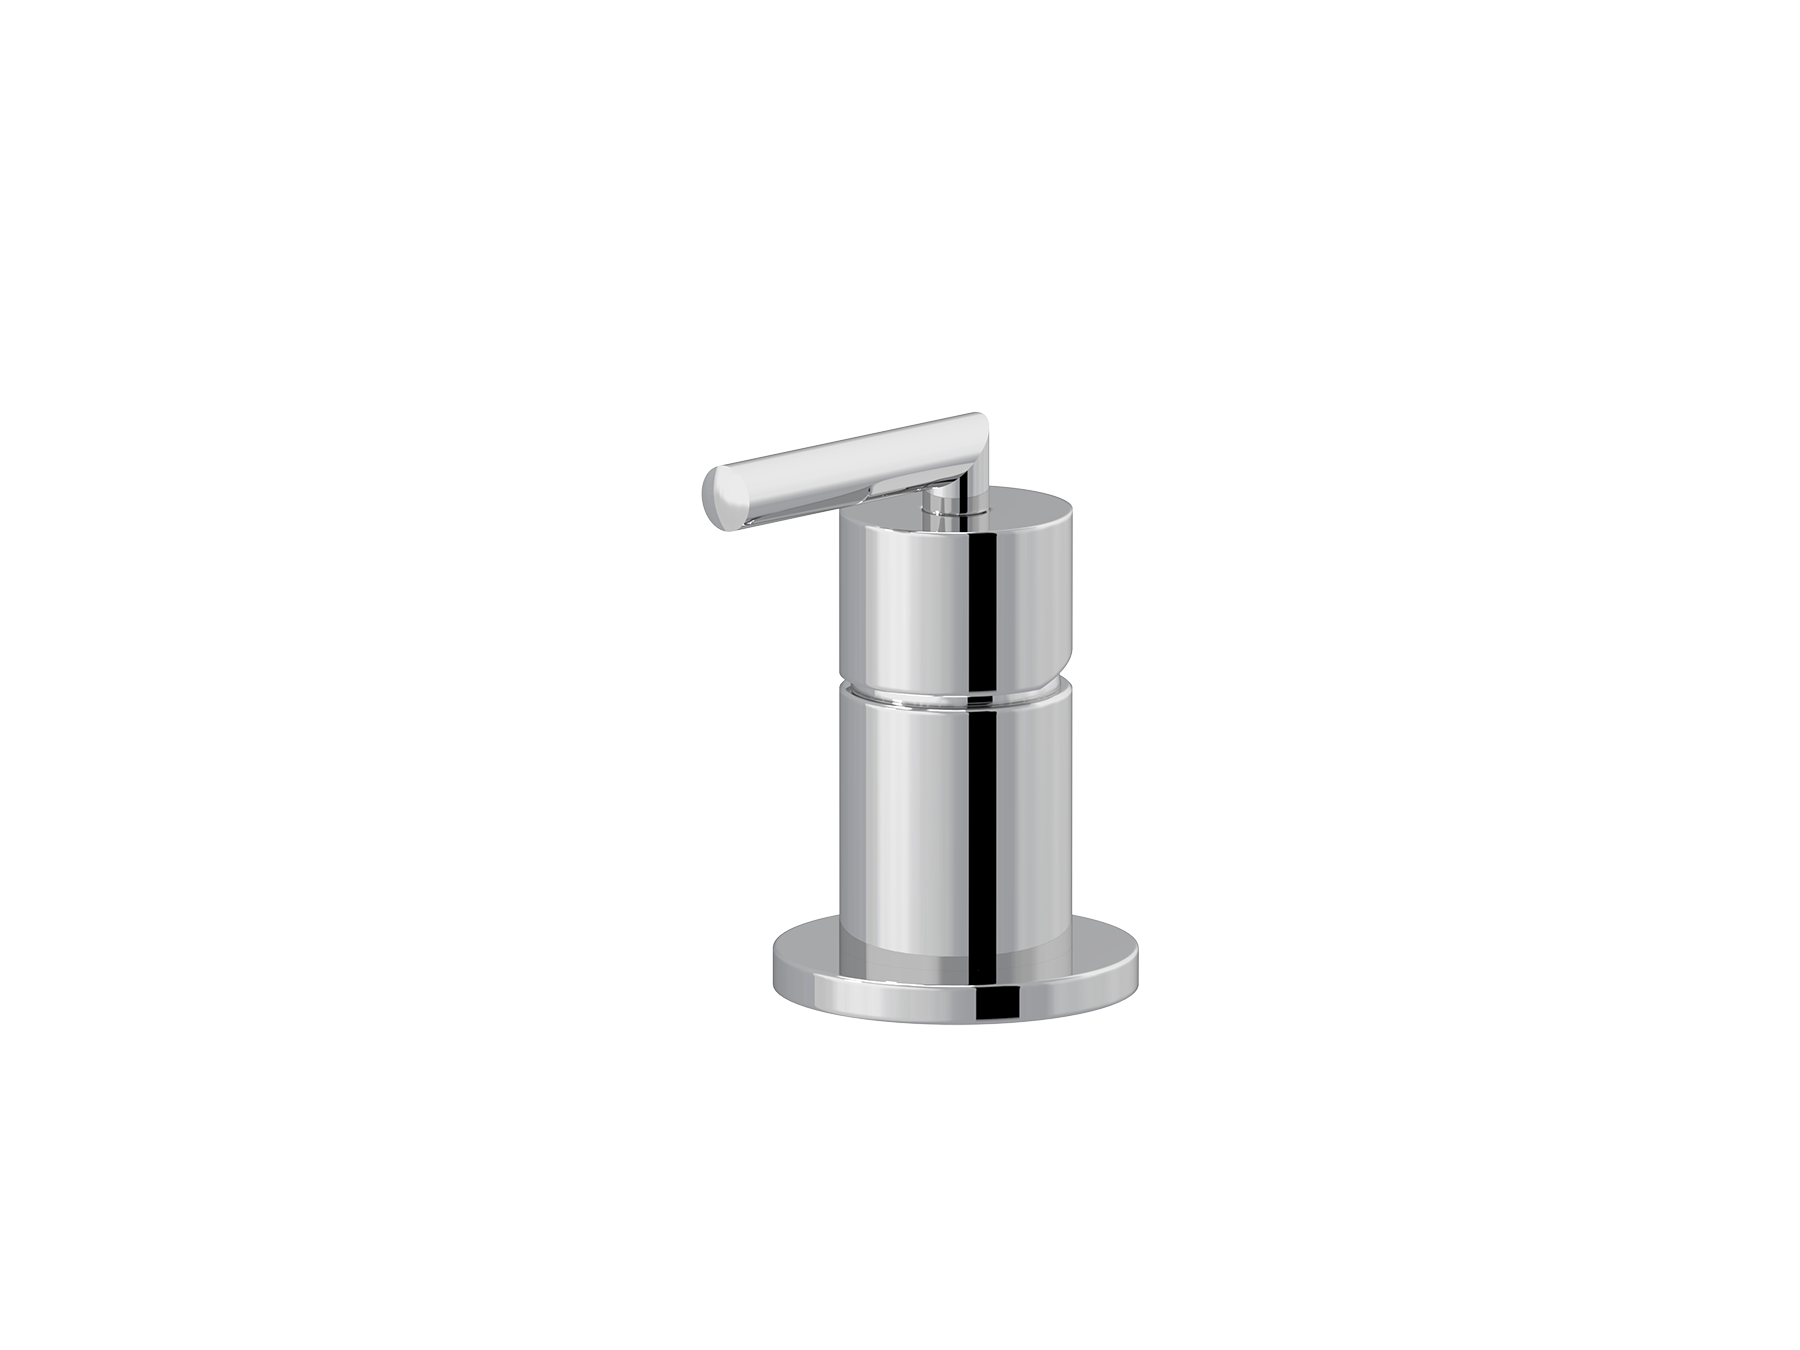 Rim-mounted single-lever washbasin mixer